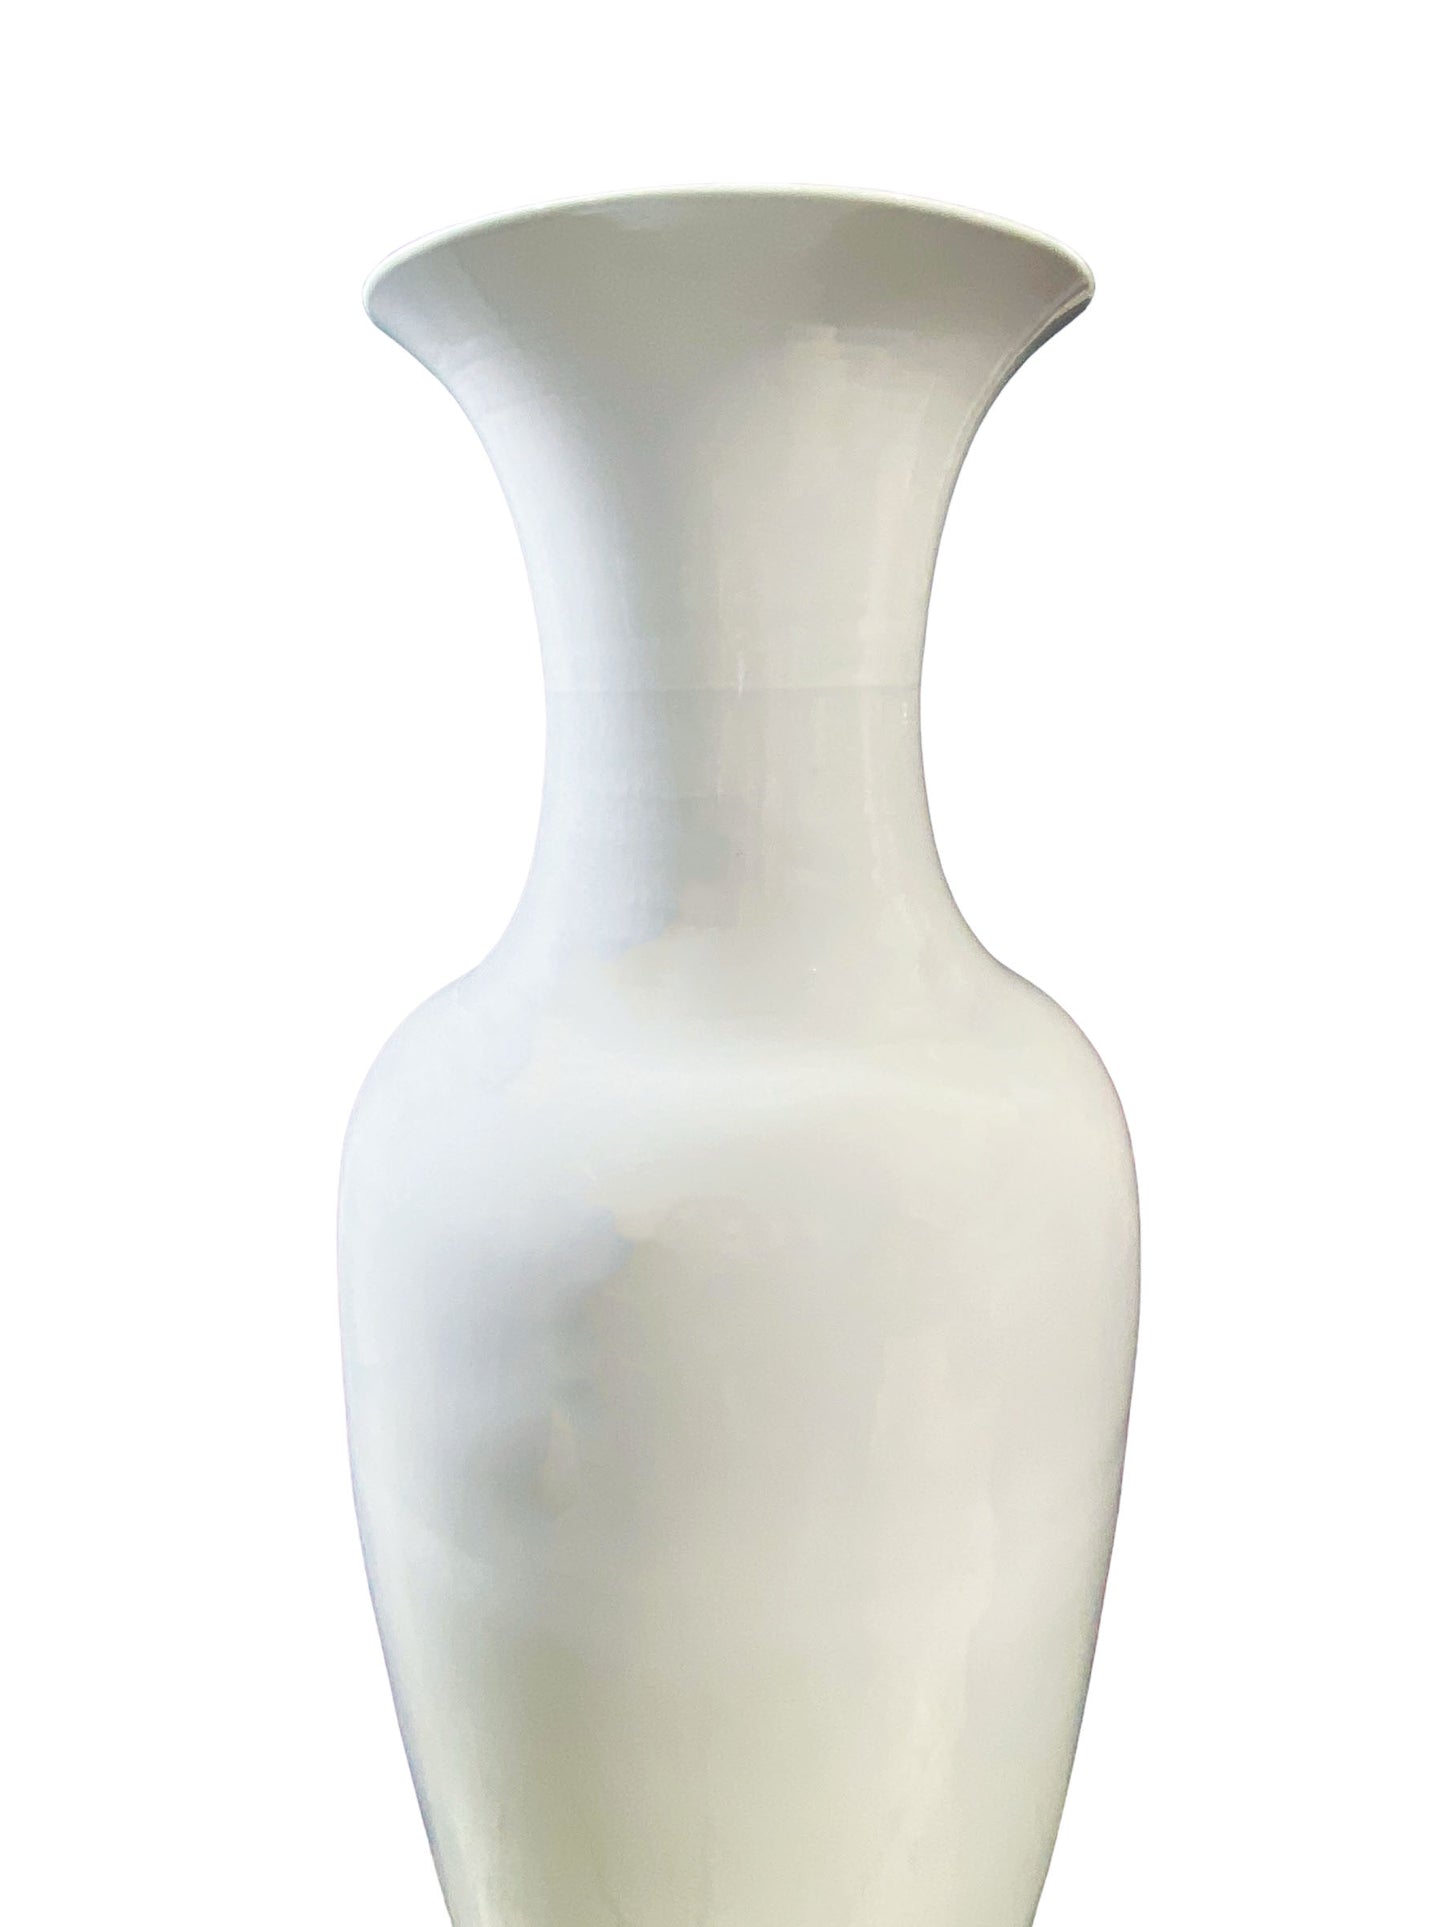 # 841 Large Chinoiserie  Blanc De Chine  Porcelain Vase 36.5"H